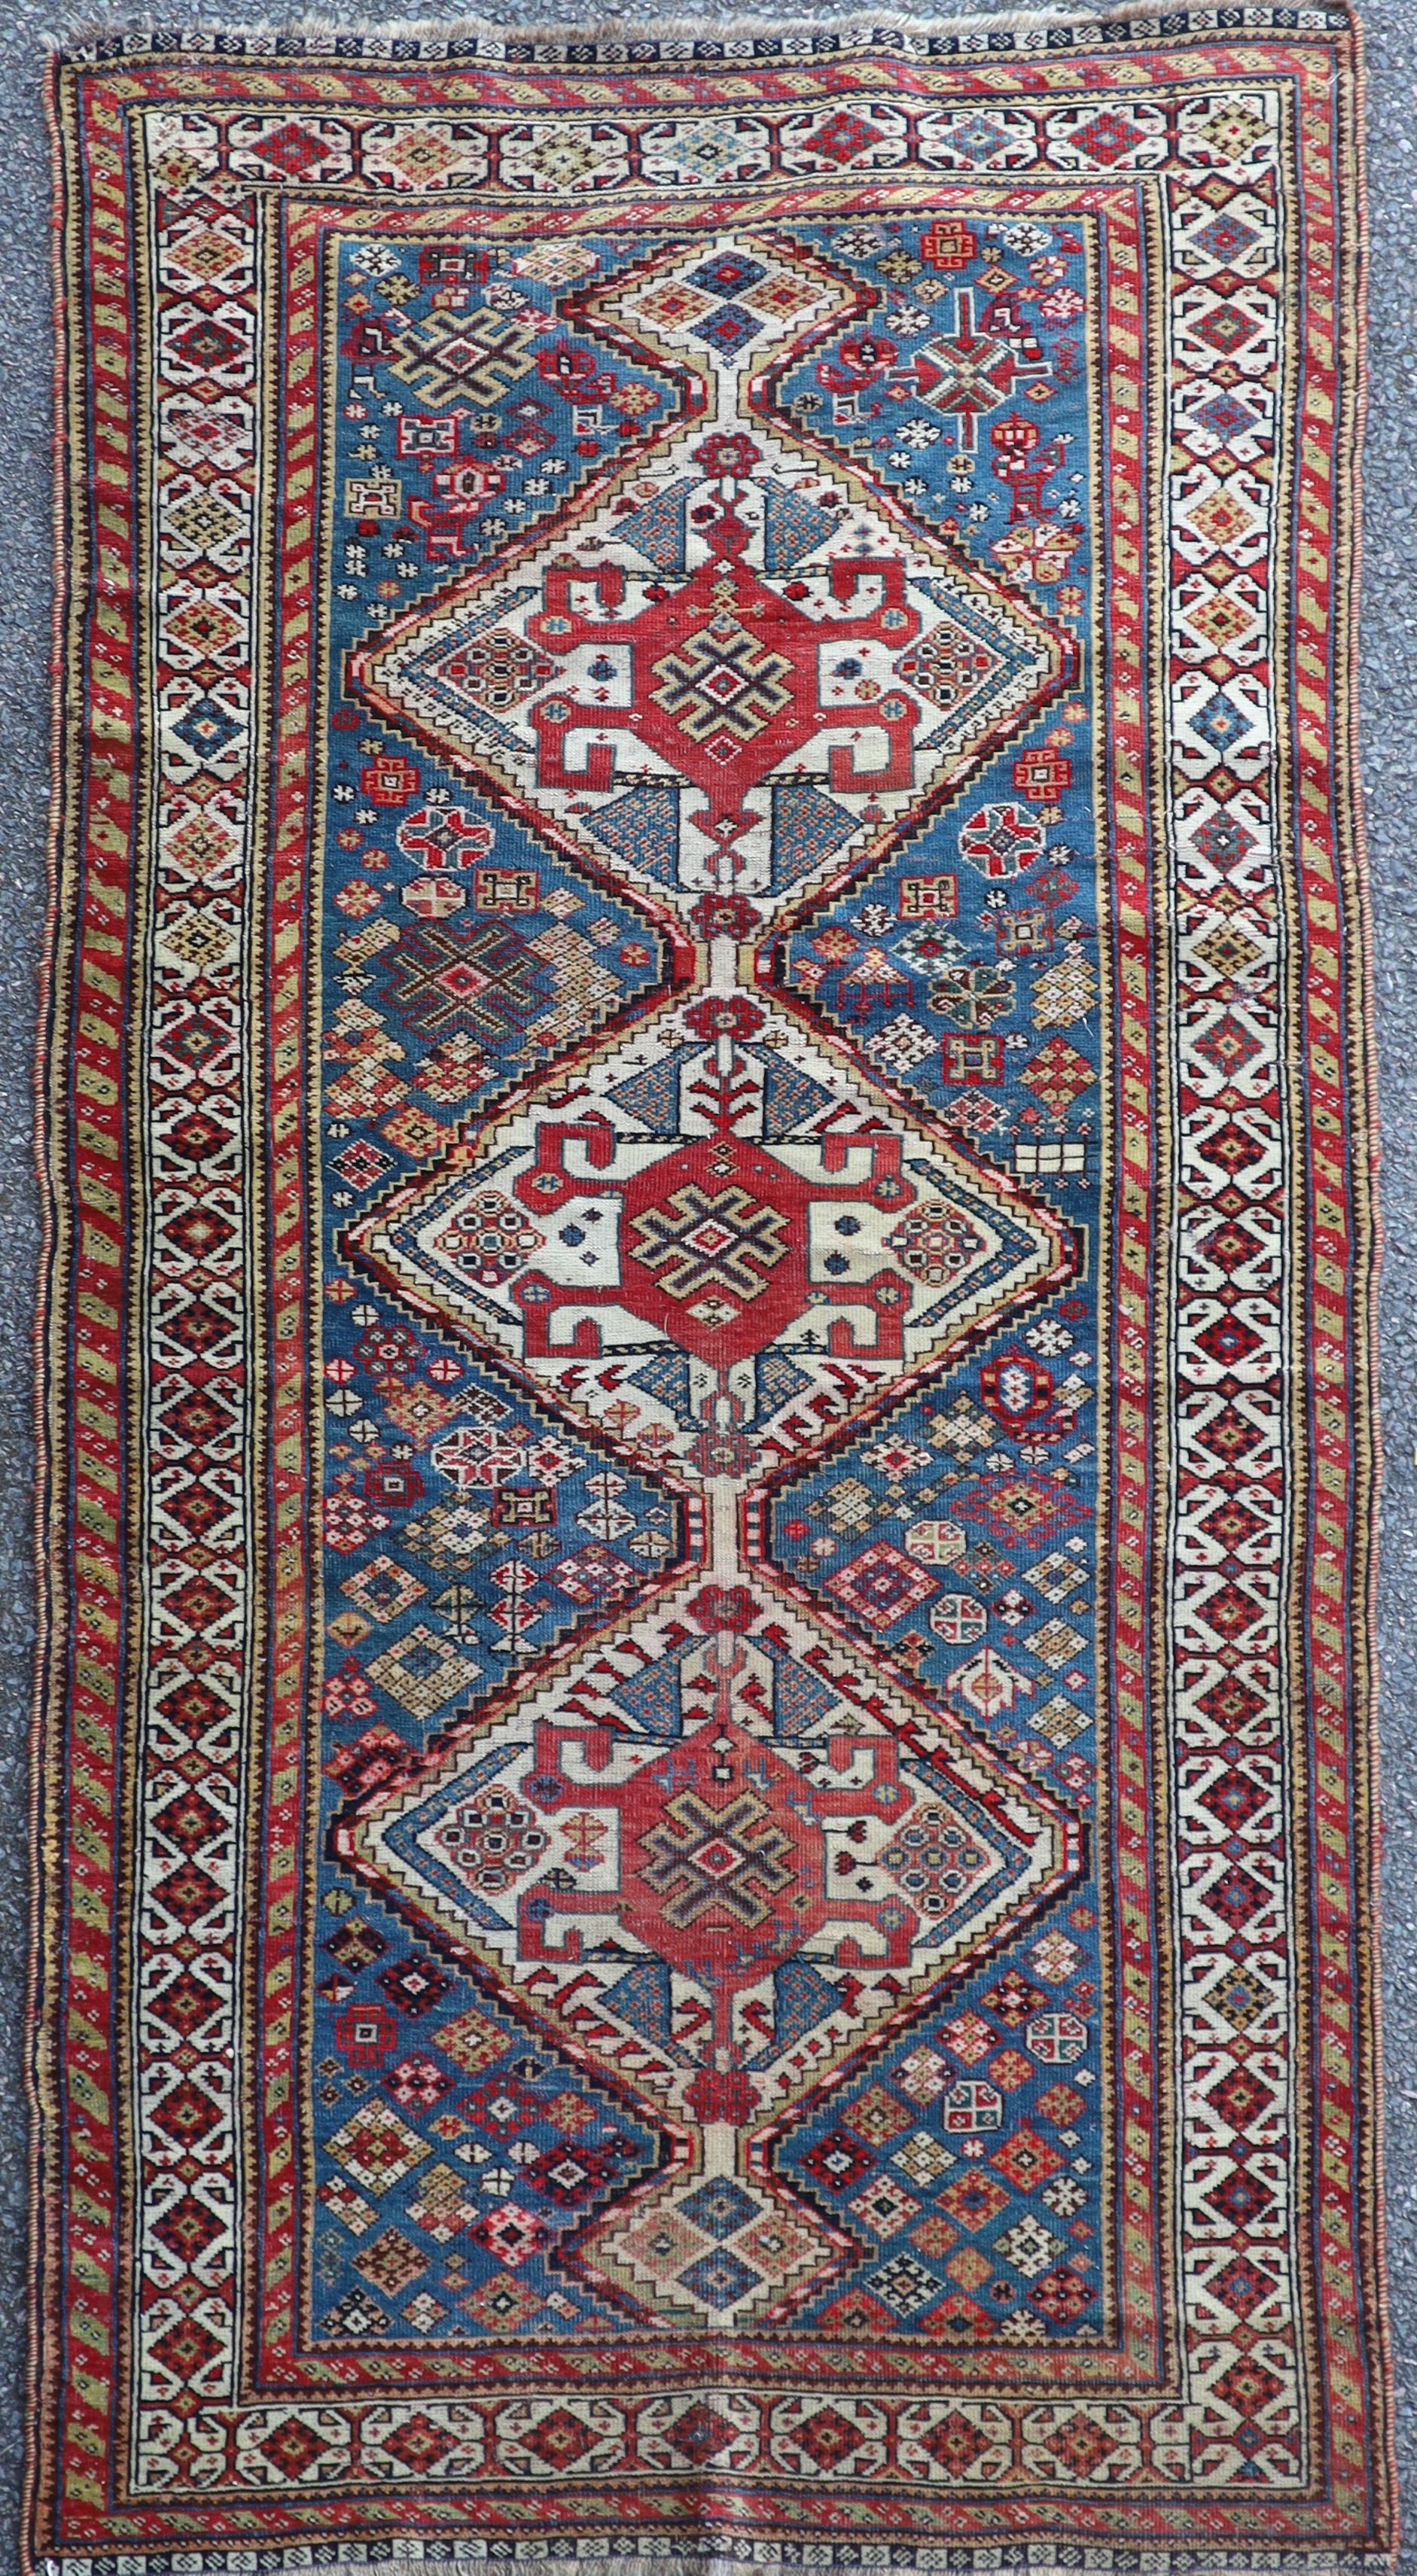 An antique Qashqai blue ground rug 184 x 95cm